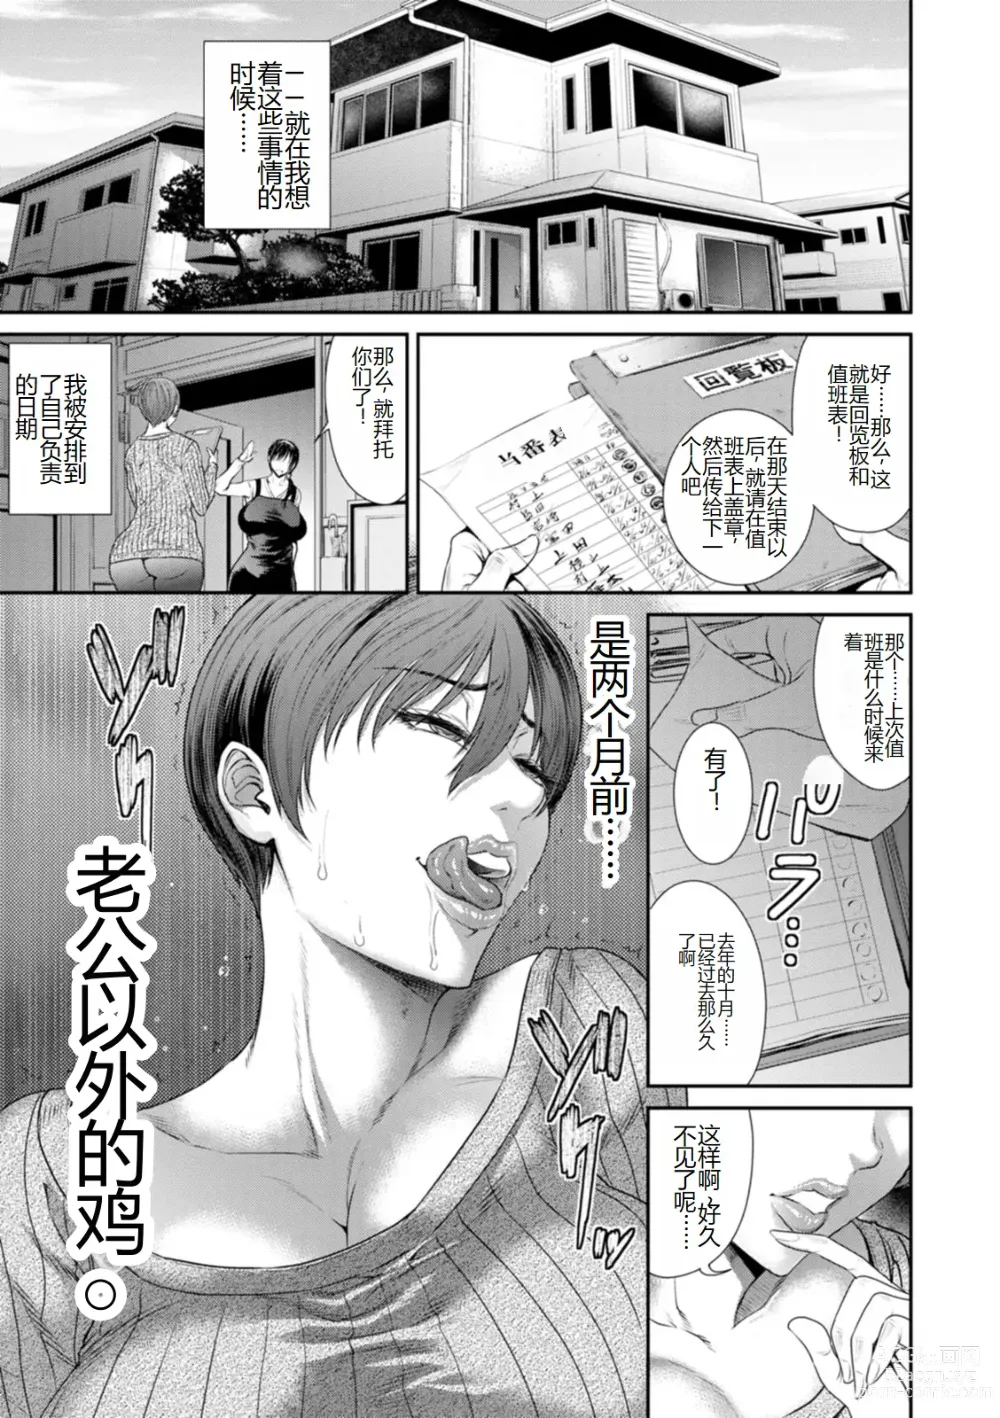 Page 9 of manga Waisetsu Box - Obscene Box